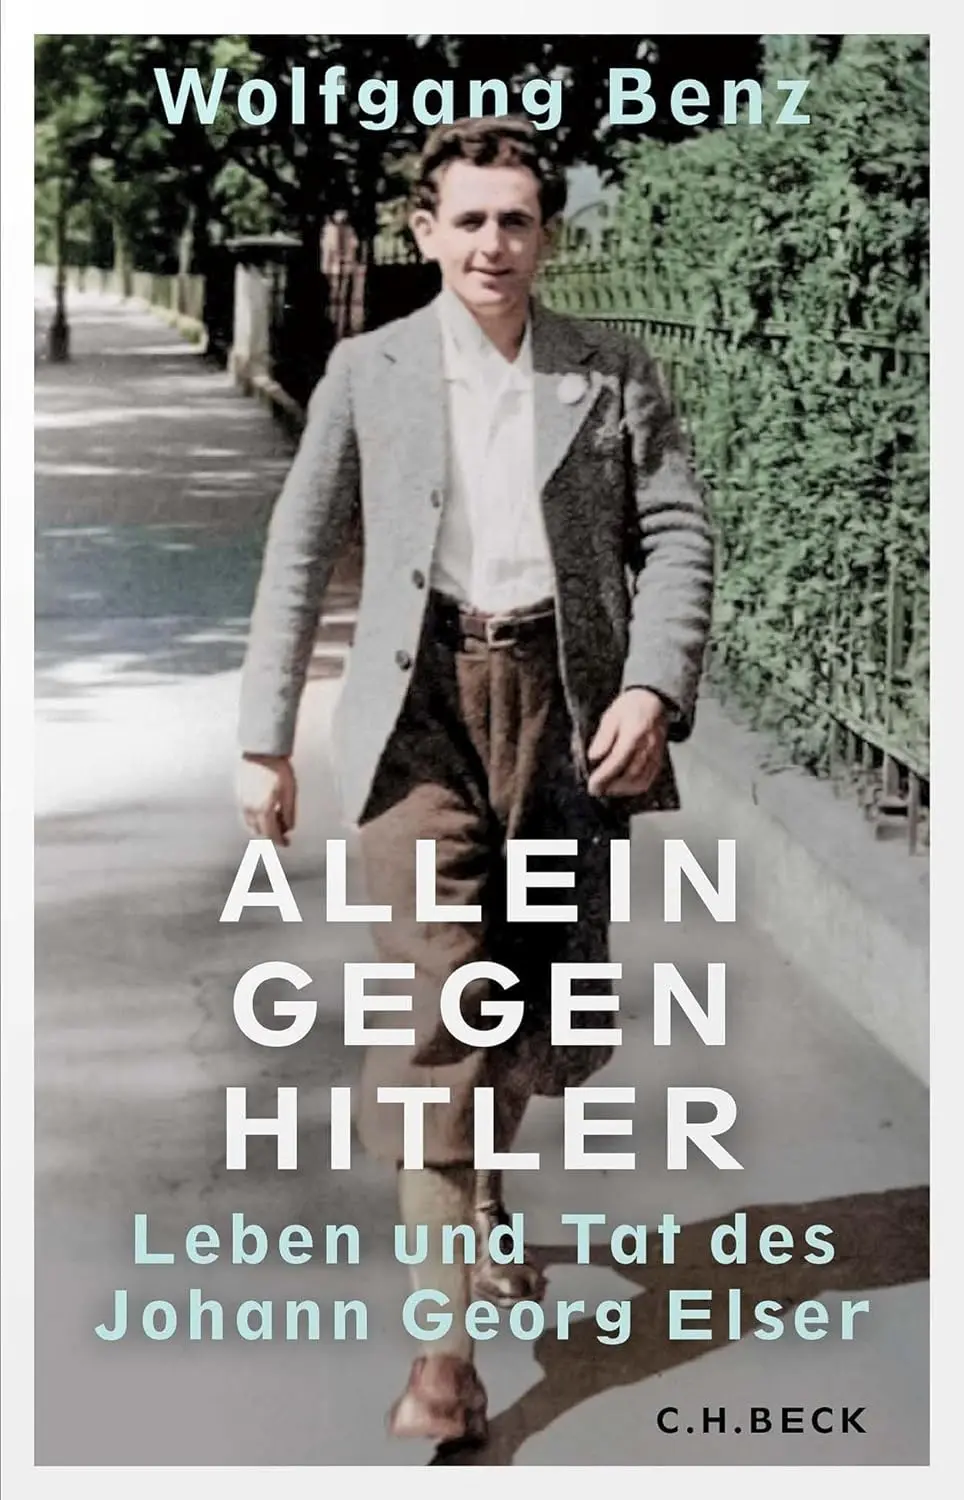 Buchcover: Allein gegen Hitler von Wolfgang Benz